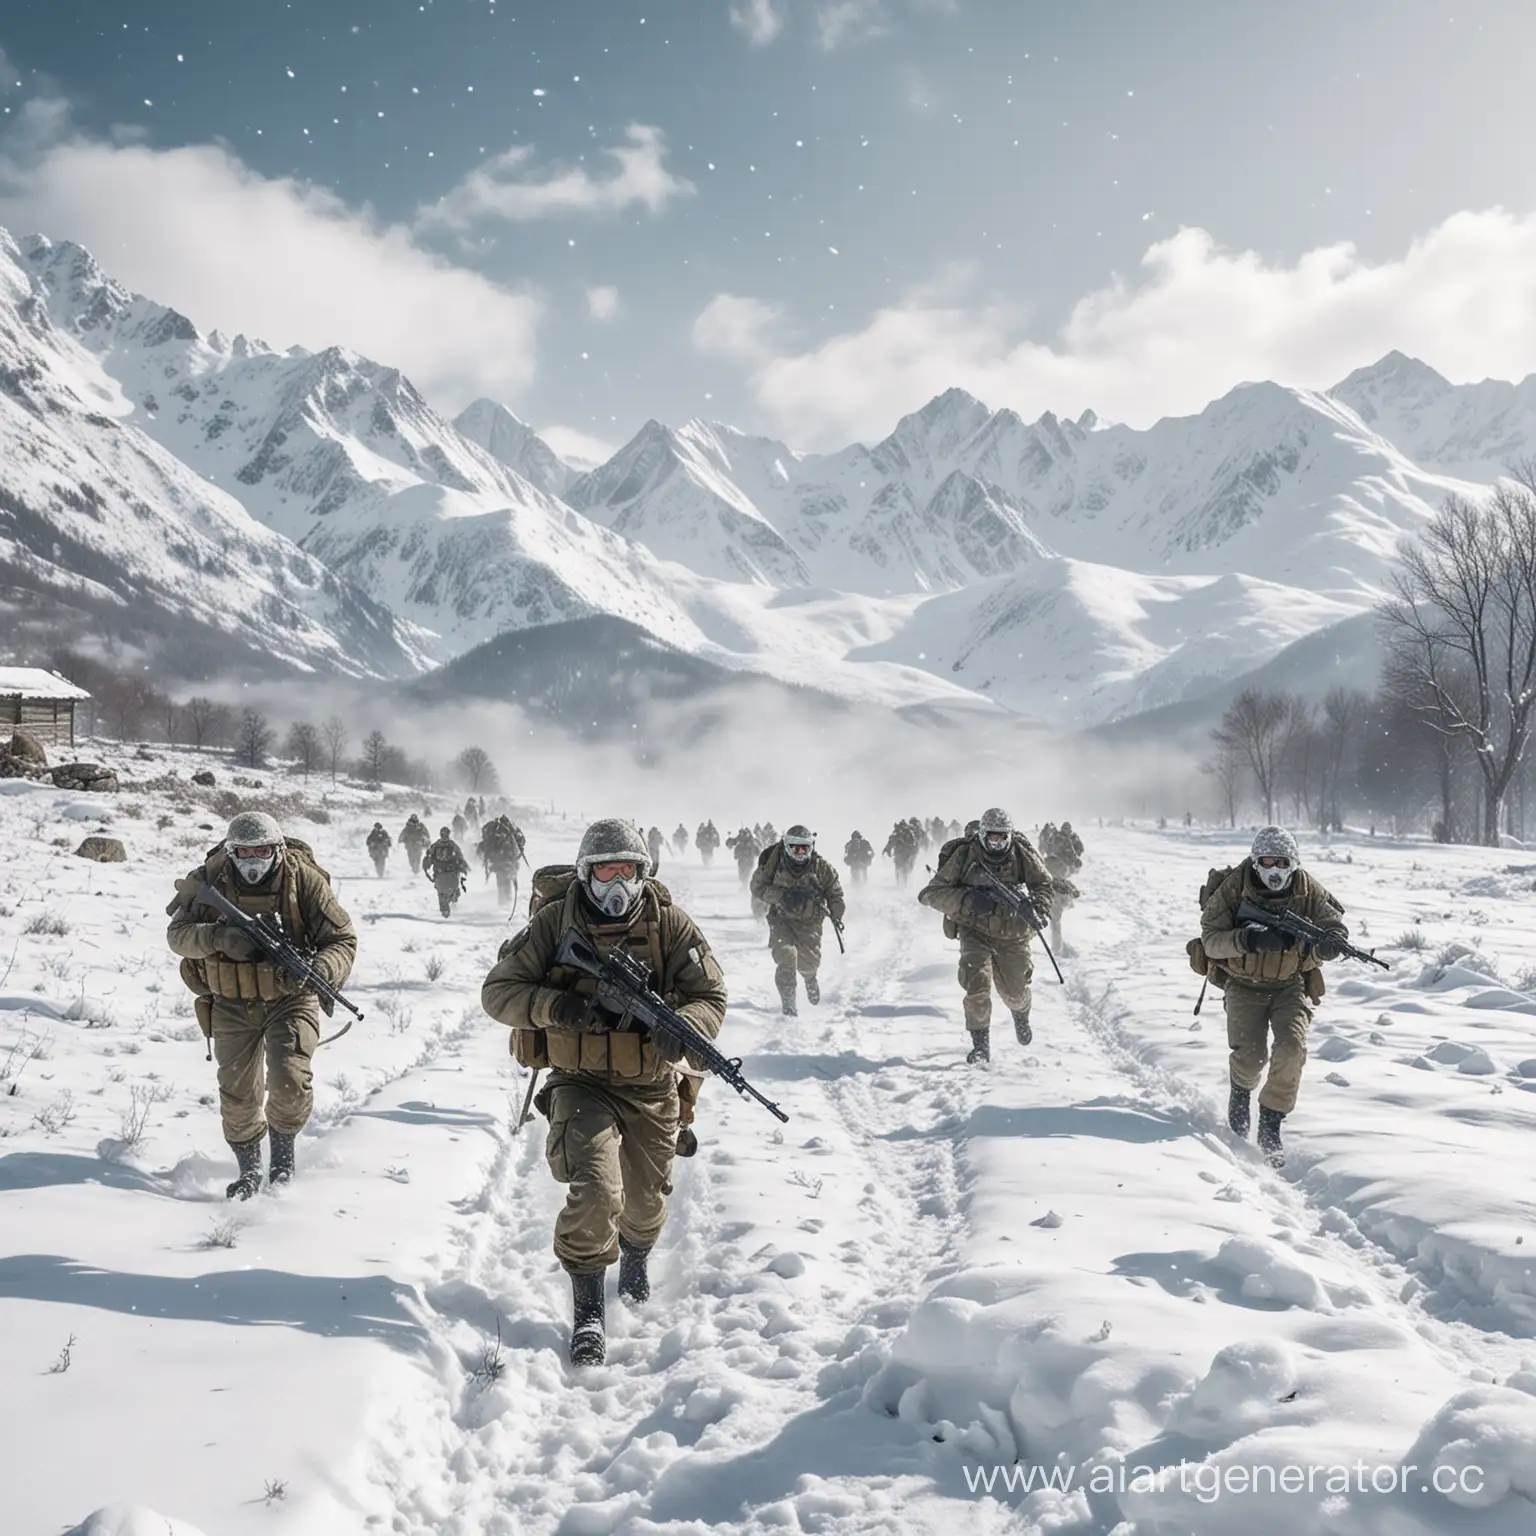 Winter-Warfare-SnowClad-Soldiers-in-Snowy-Mountain-Battle